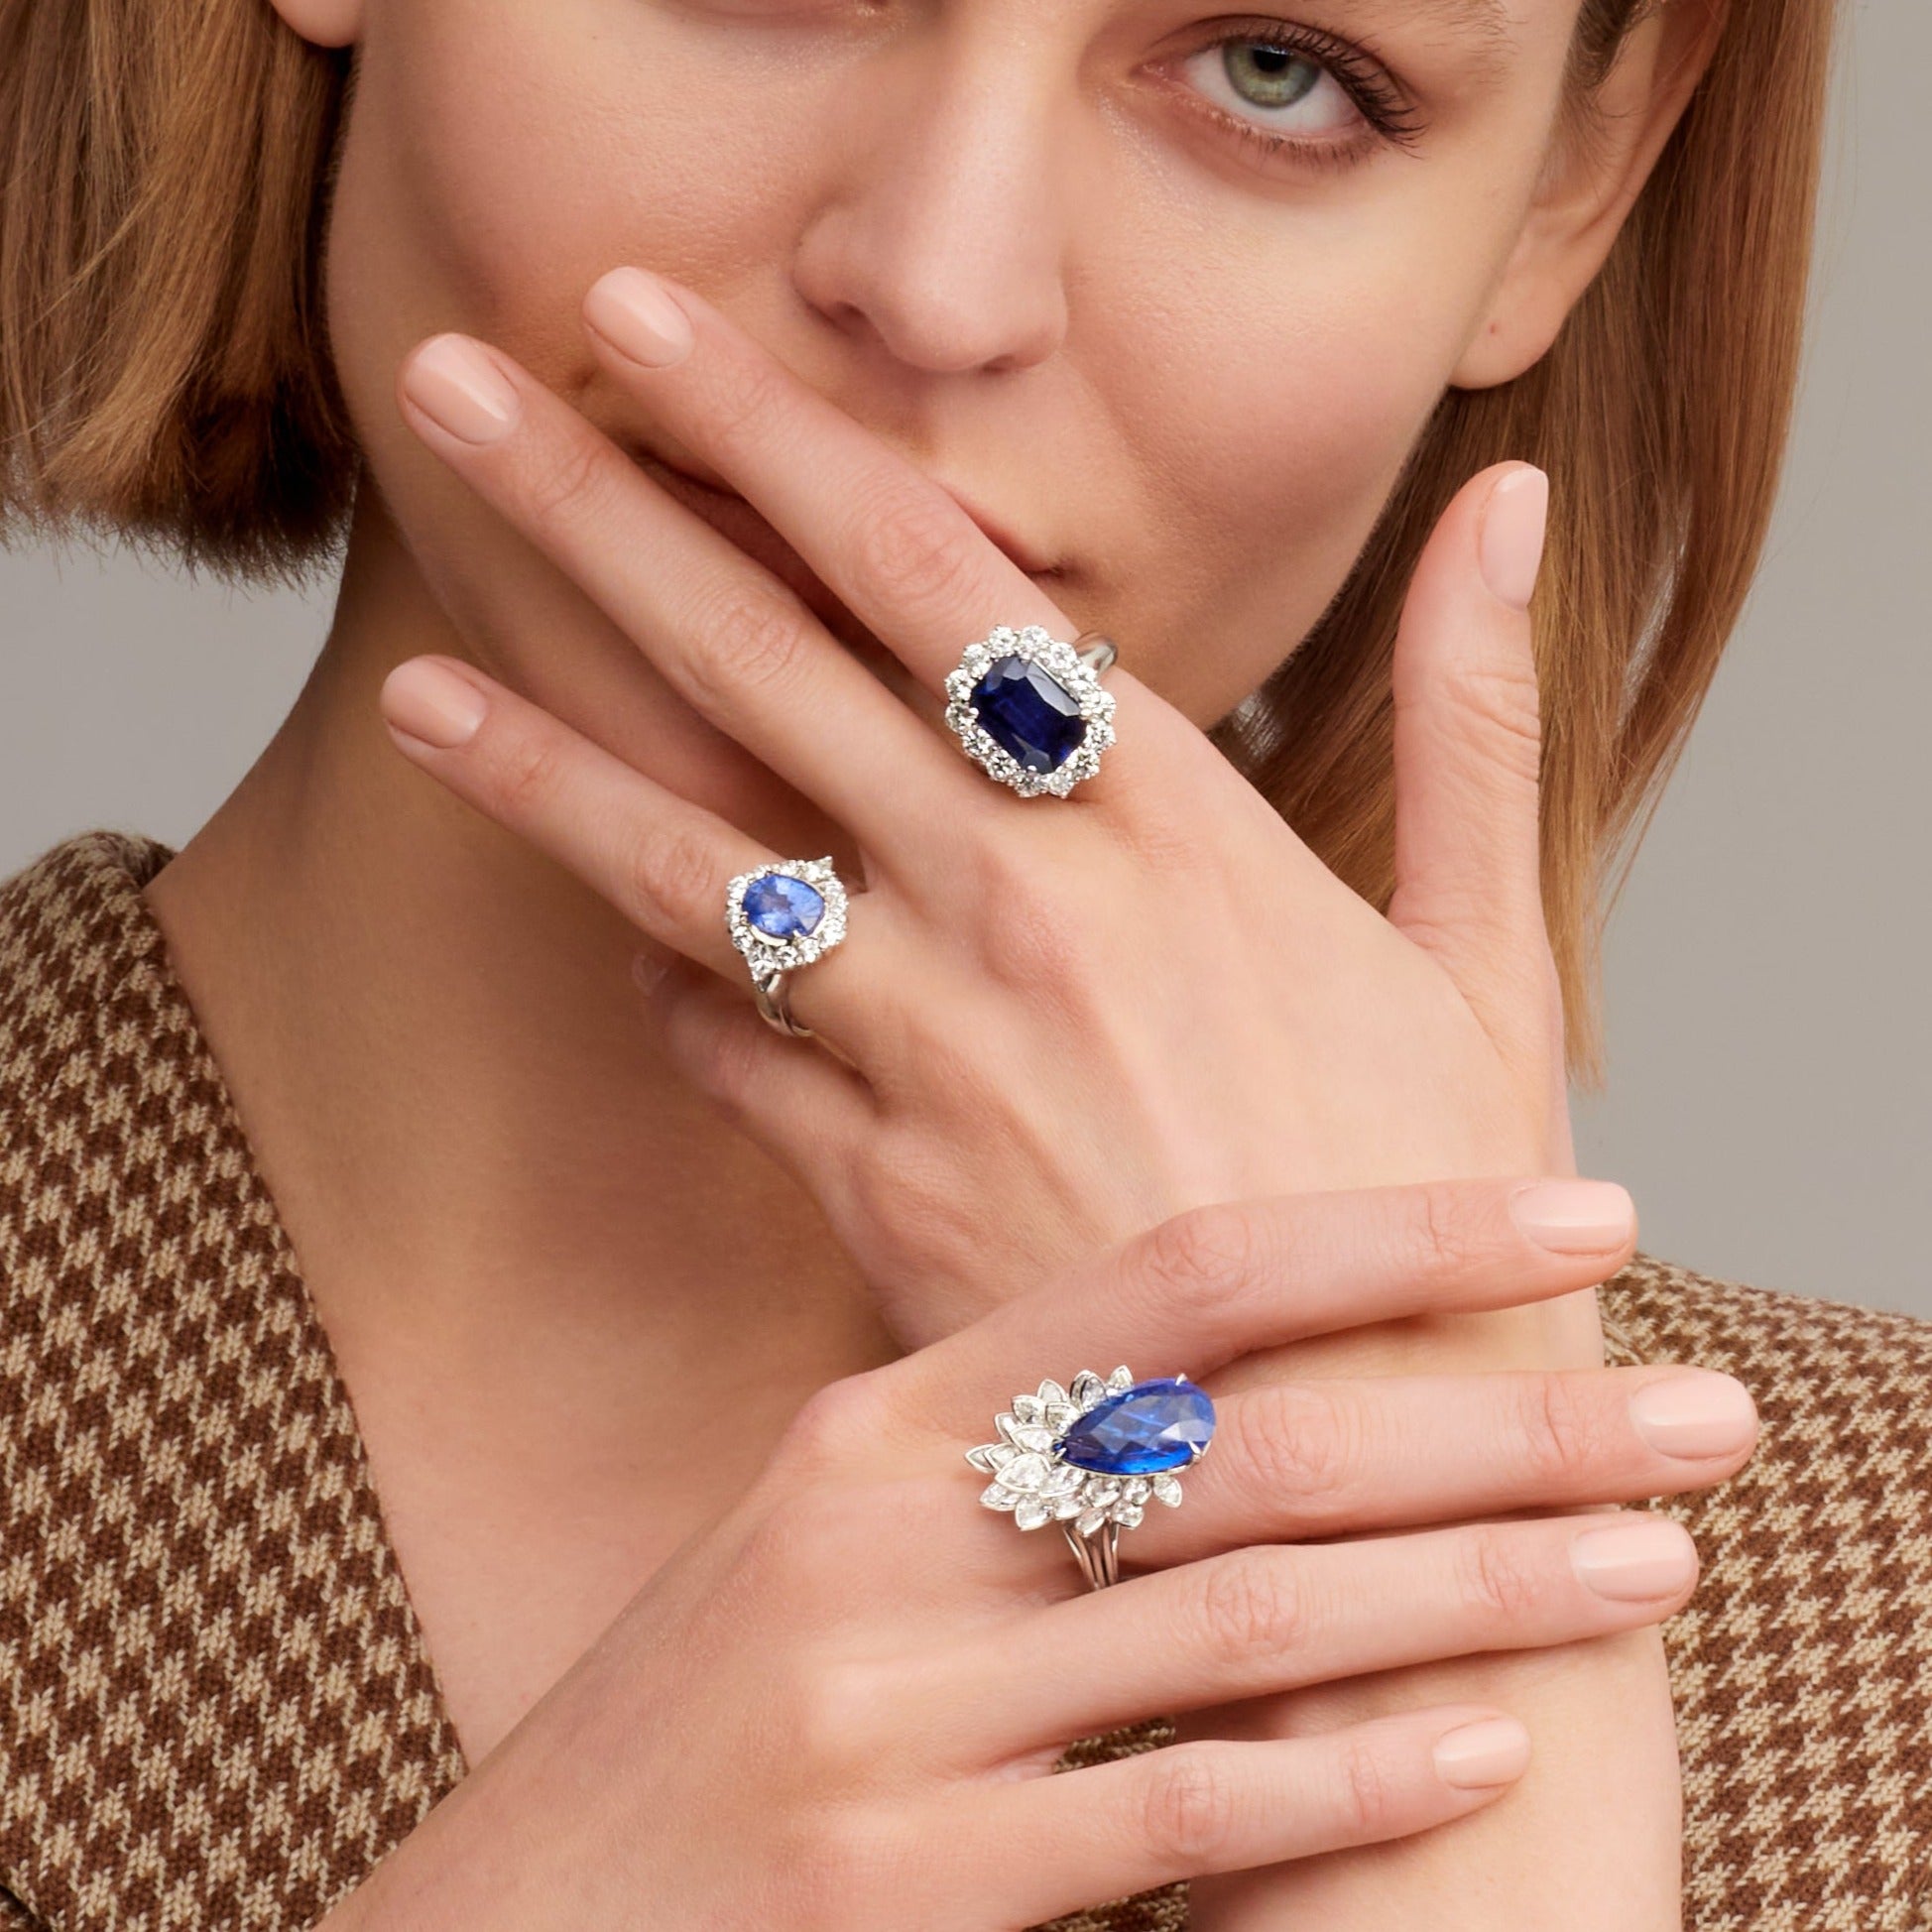 Radiant Cut Sapphire Ring with Round Cut Diamond Halo in Platinum Ruthenium